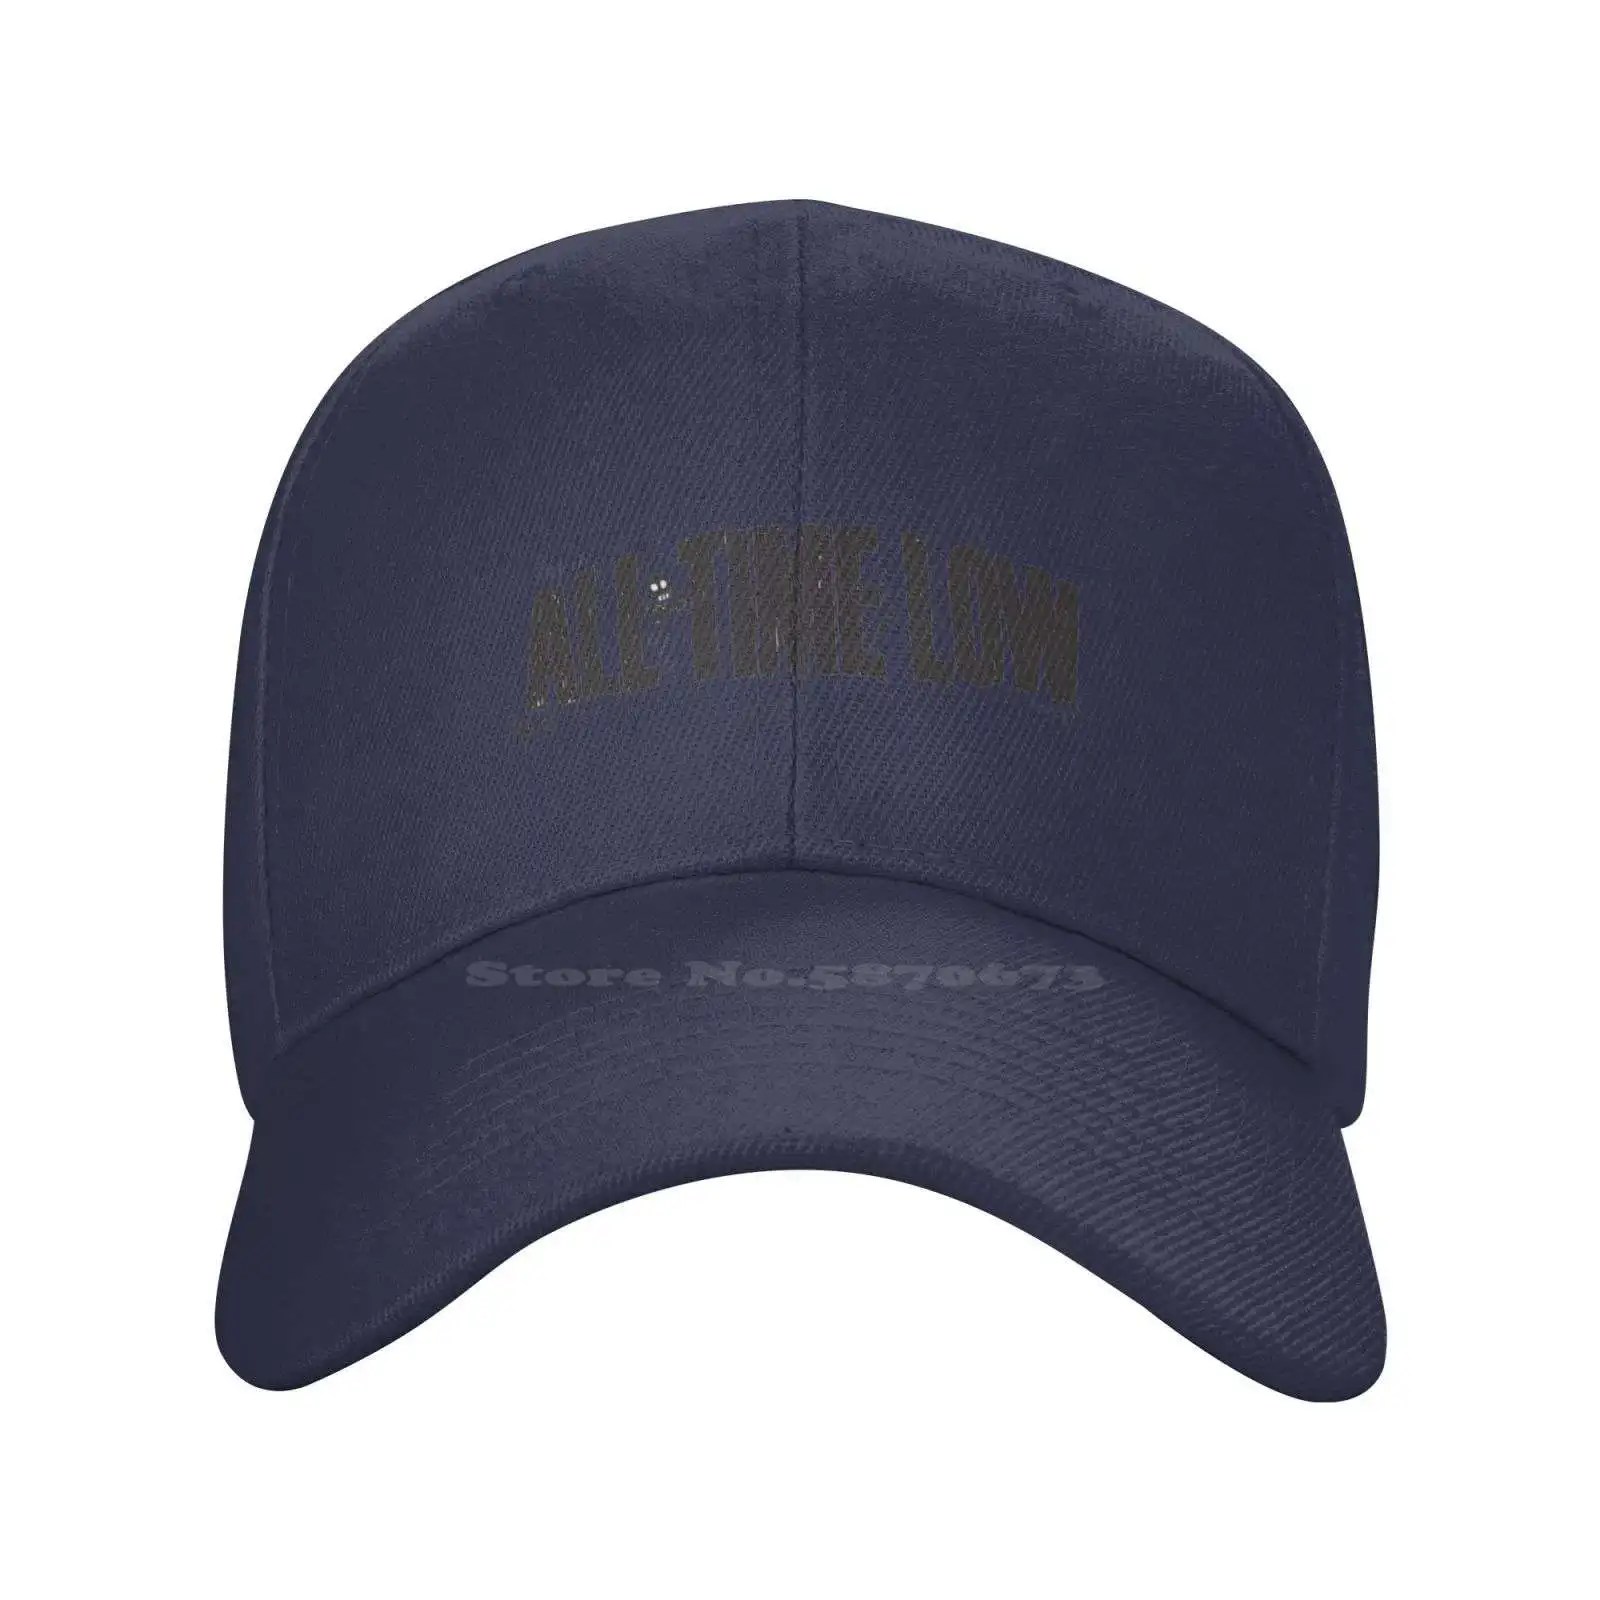 Высококачественная джинсовая кепка с графическим логотипом бренда All Time Low, вязаная шапка-бейсболка